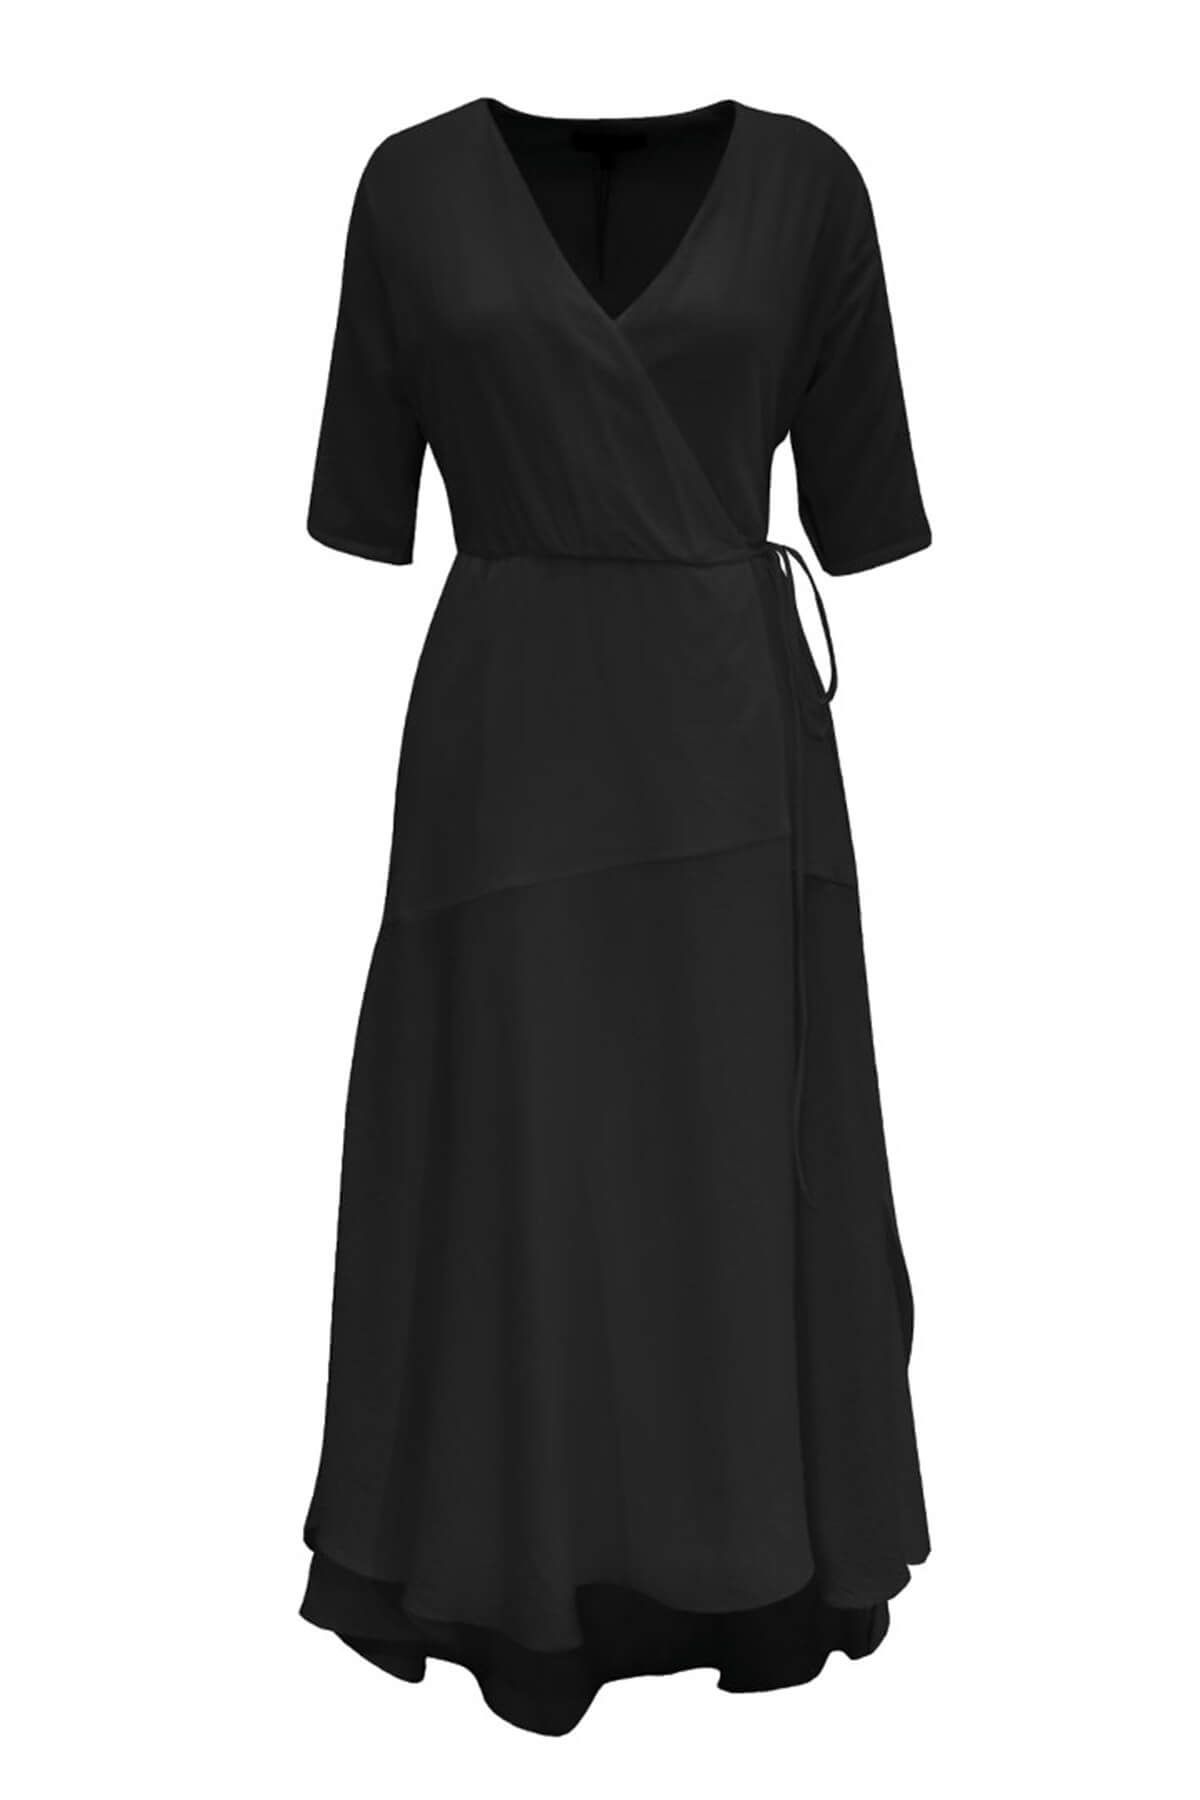 Rivus Kadın Siyah Elbise 1416-2